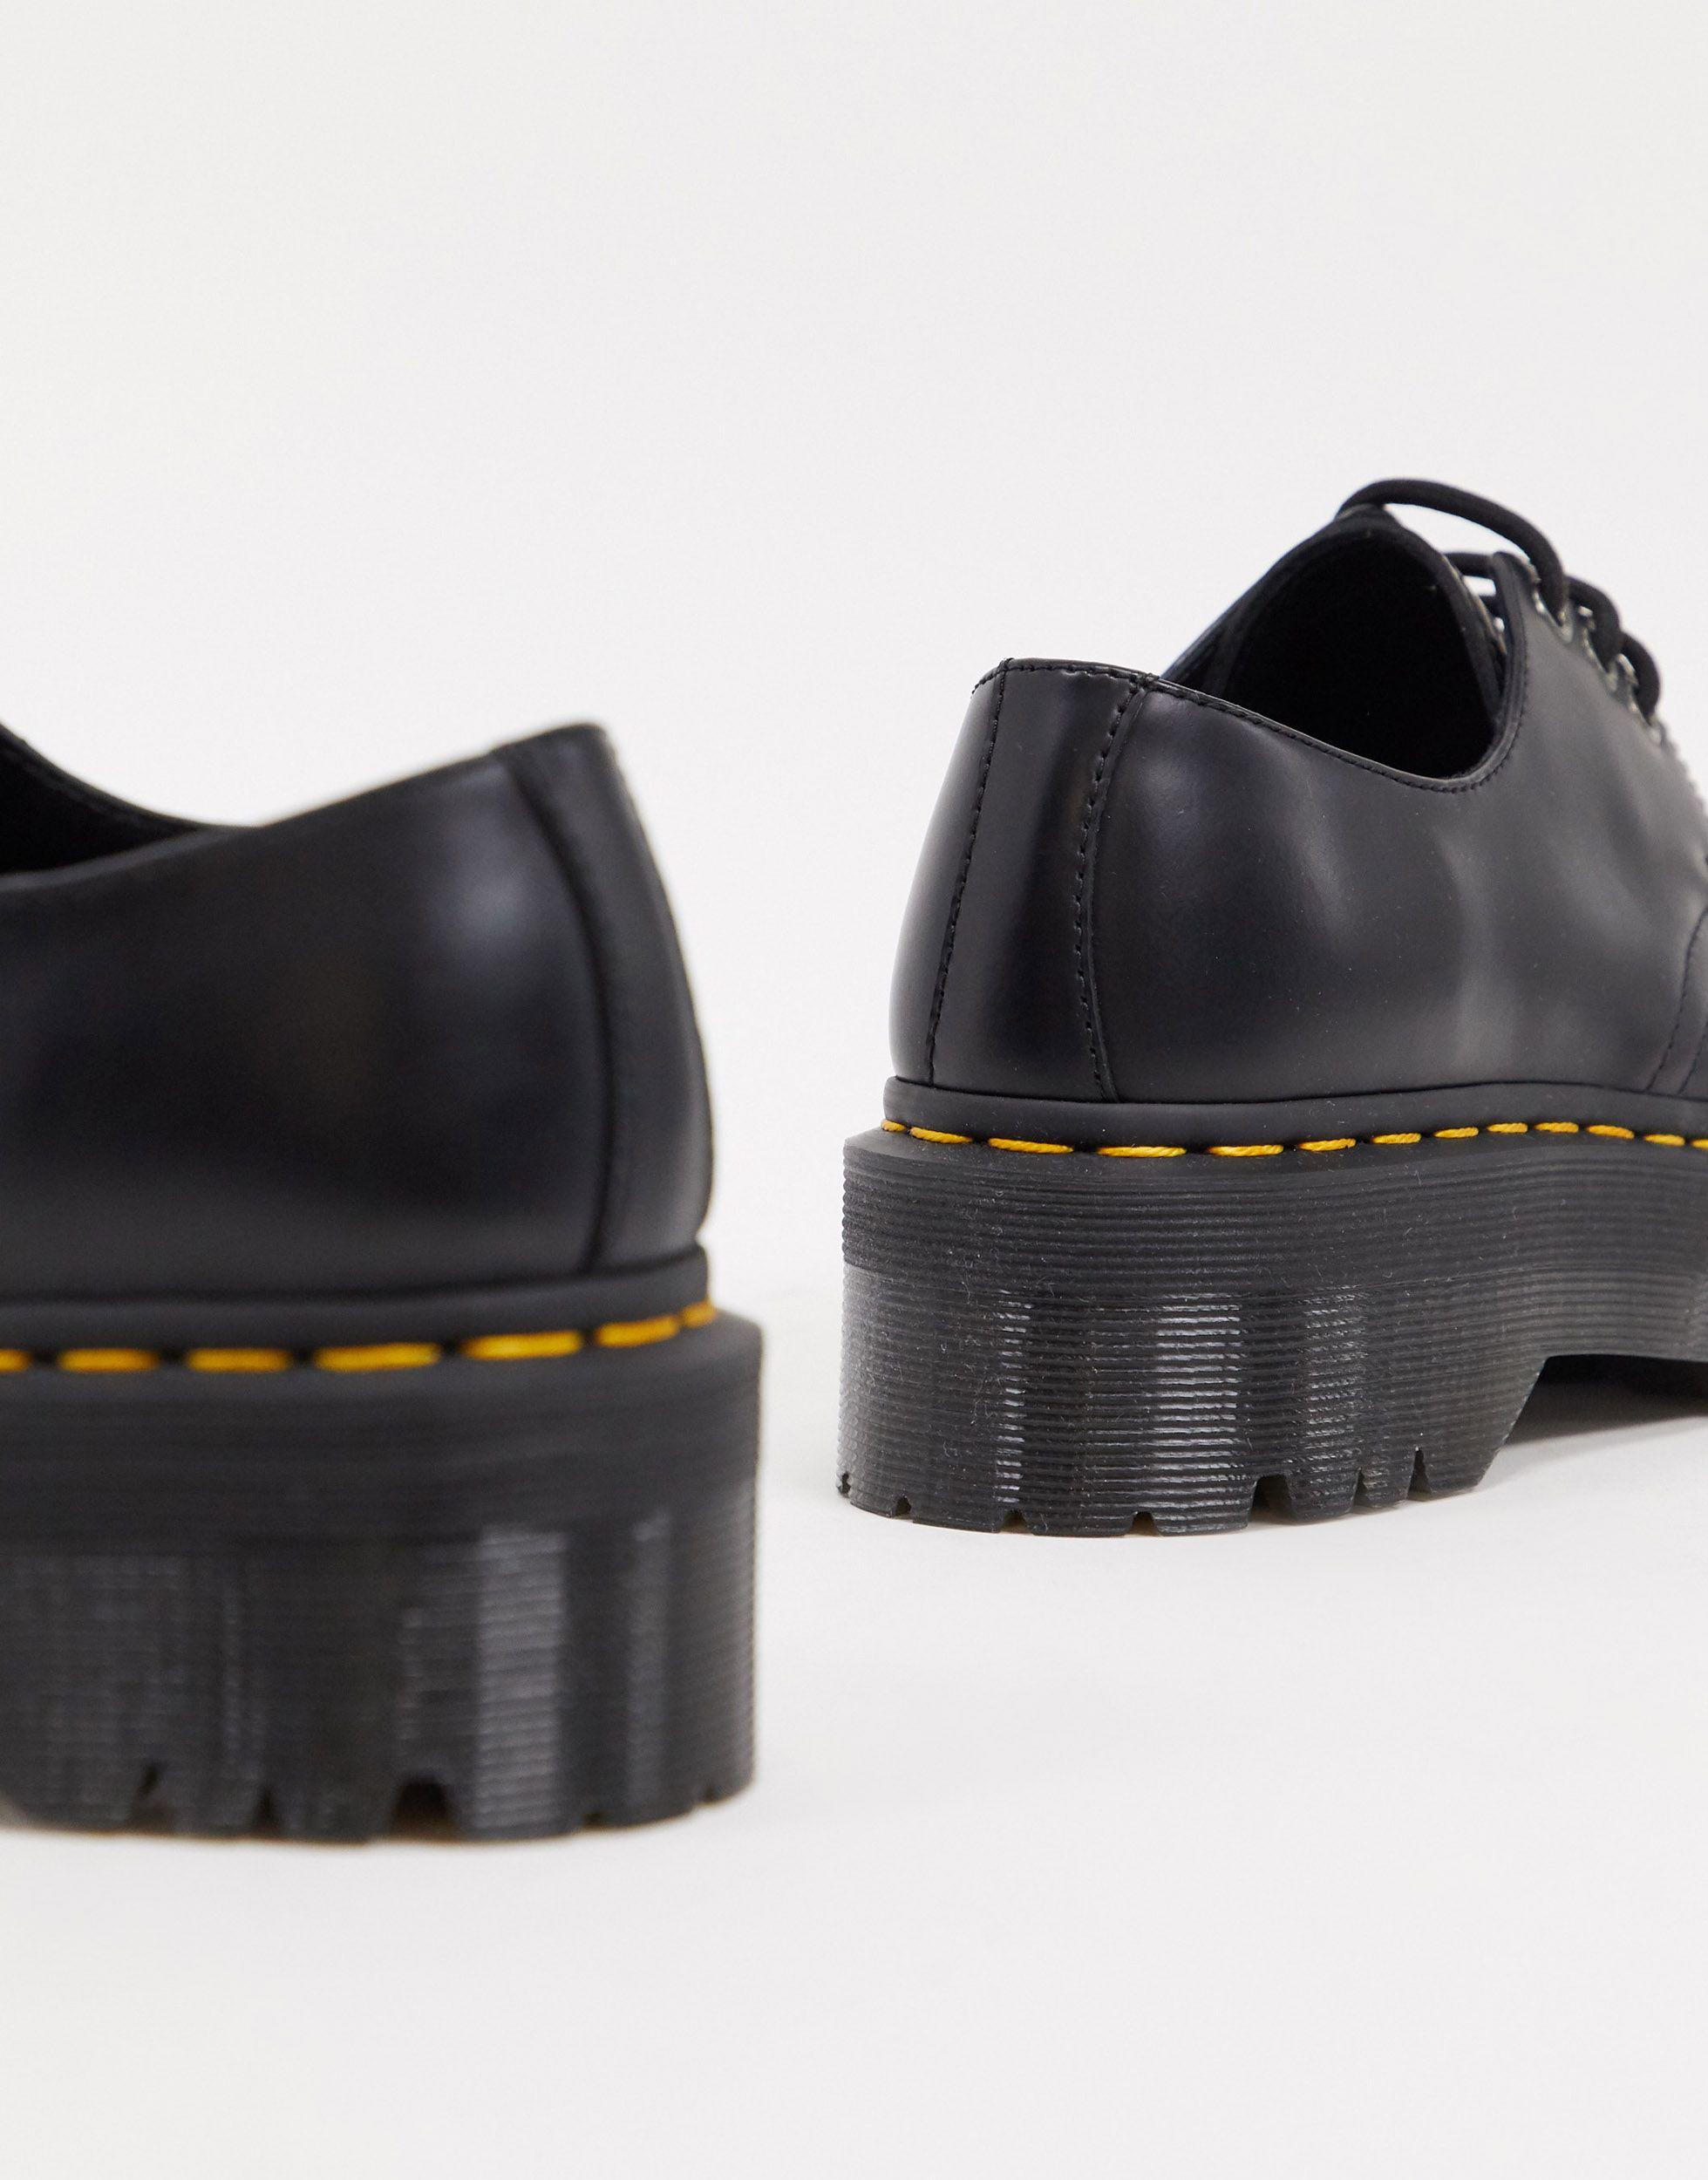 Dr. Martens Leather 1461 Quad Platform Shoes in Black - Save 53% | Lyst